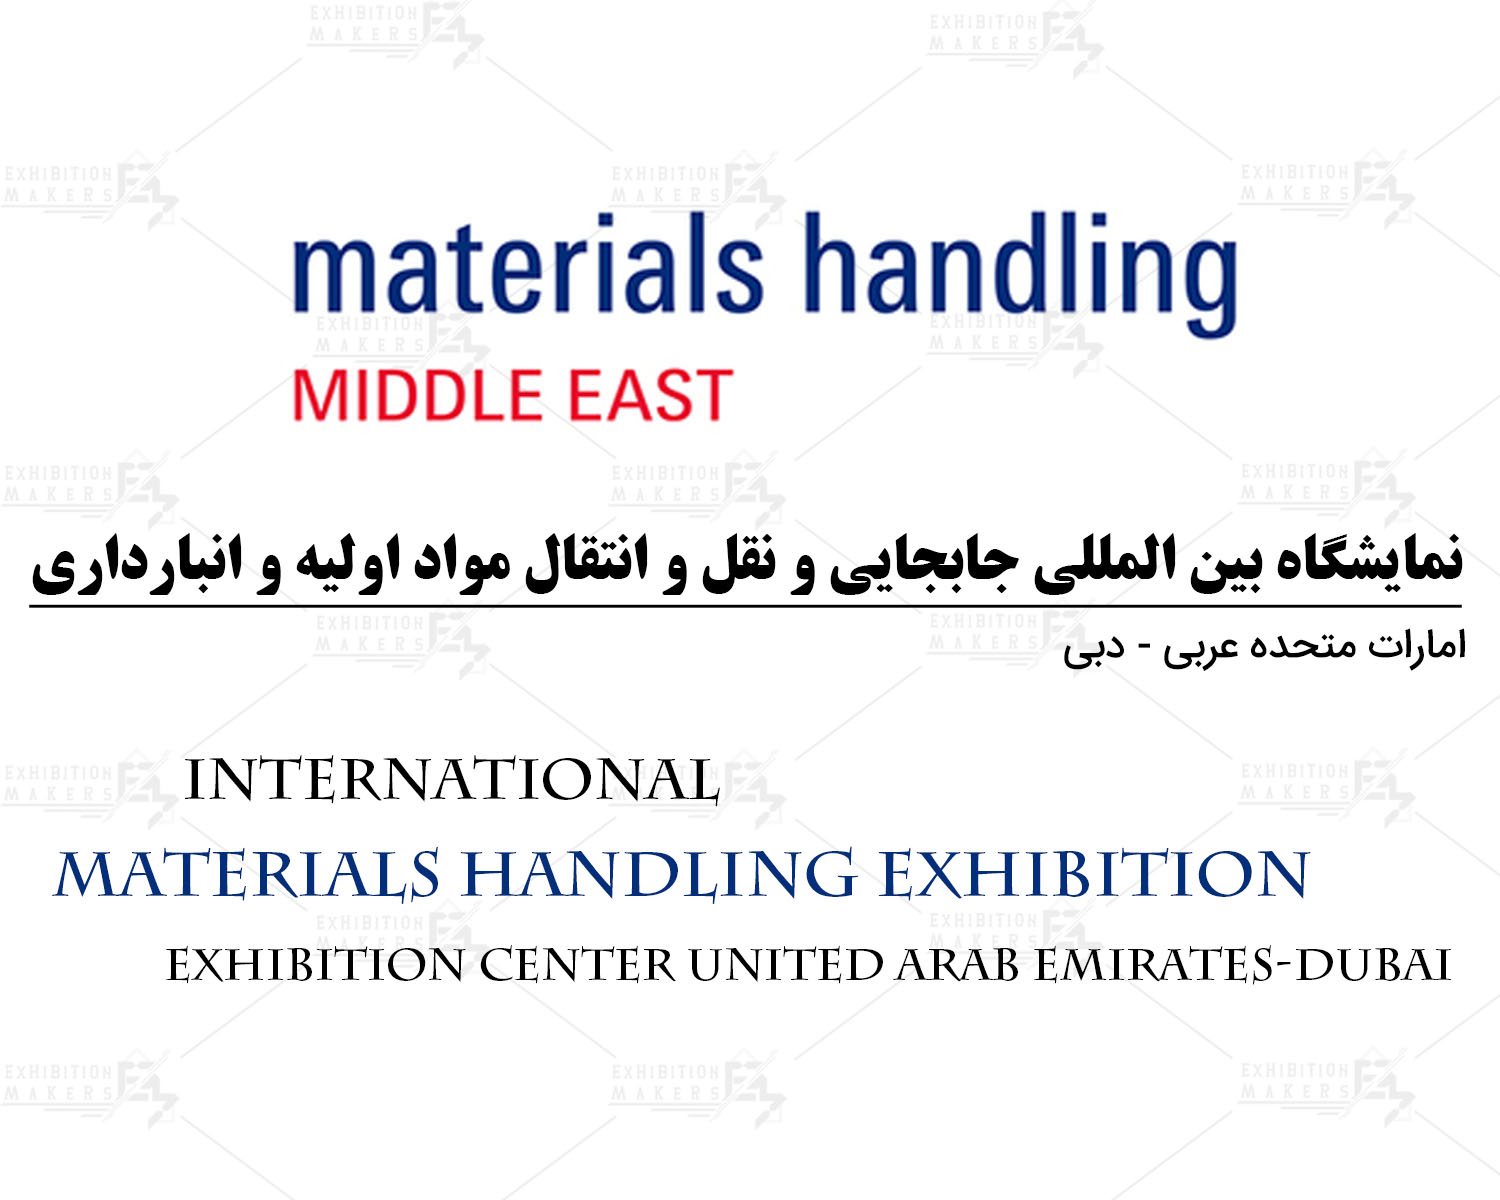 نمایشگاه بین المللی جابجایی و نقل و انتقال مواد اولیه و انبارداری امارات متحده عربی- دبی